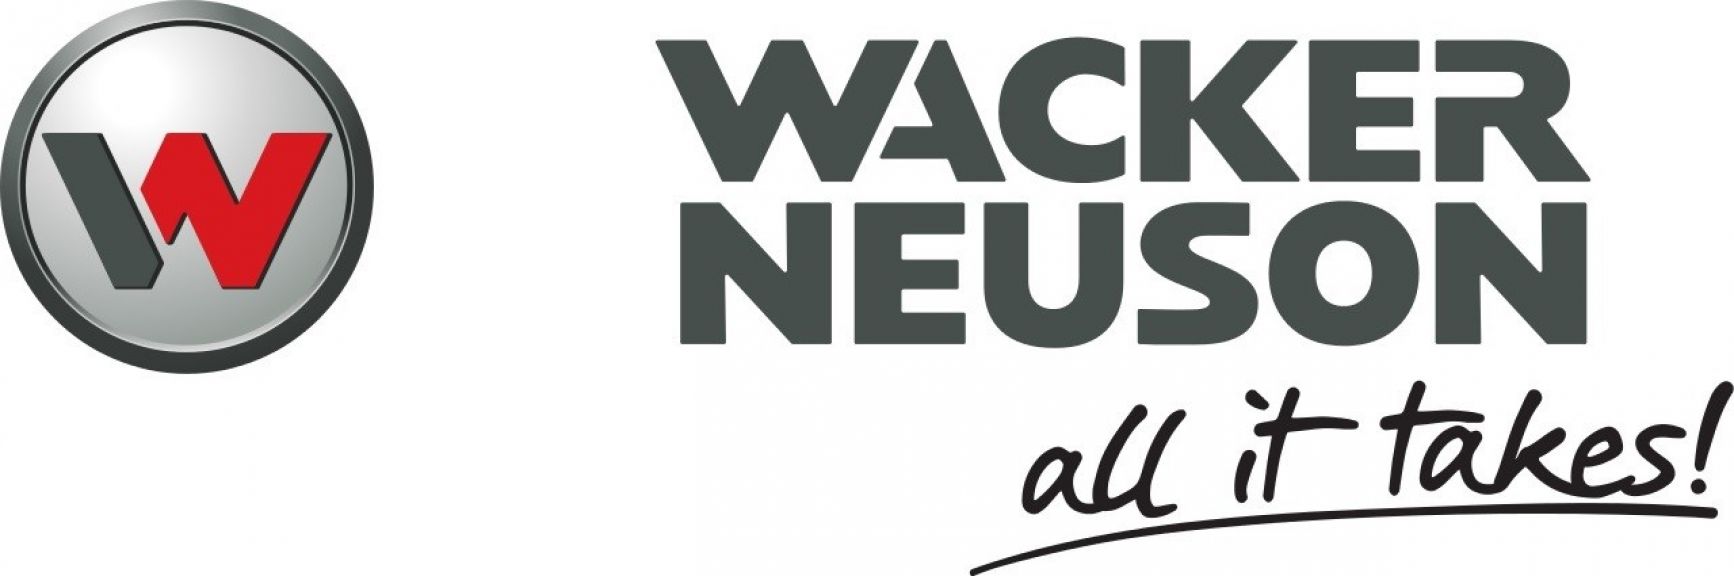 Wacker Neuson otvorila drugi pogon u Kragujevcu Wacker_neuson_010623_tw1024